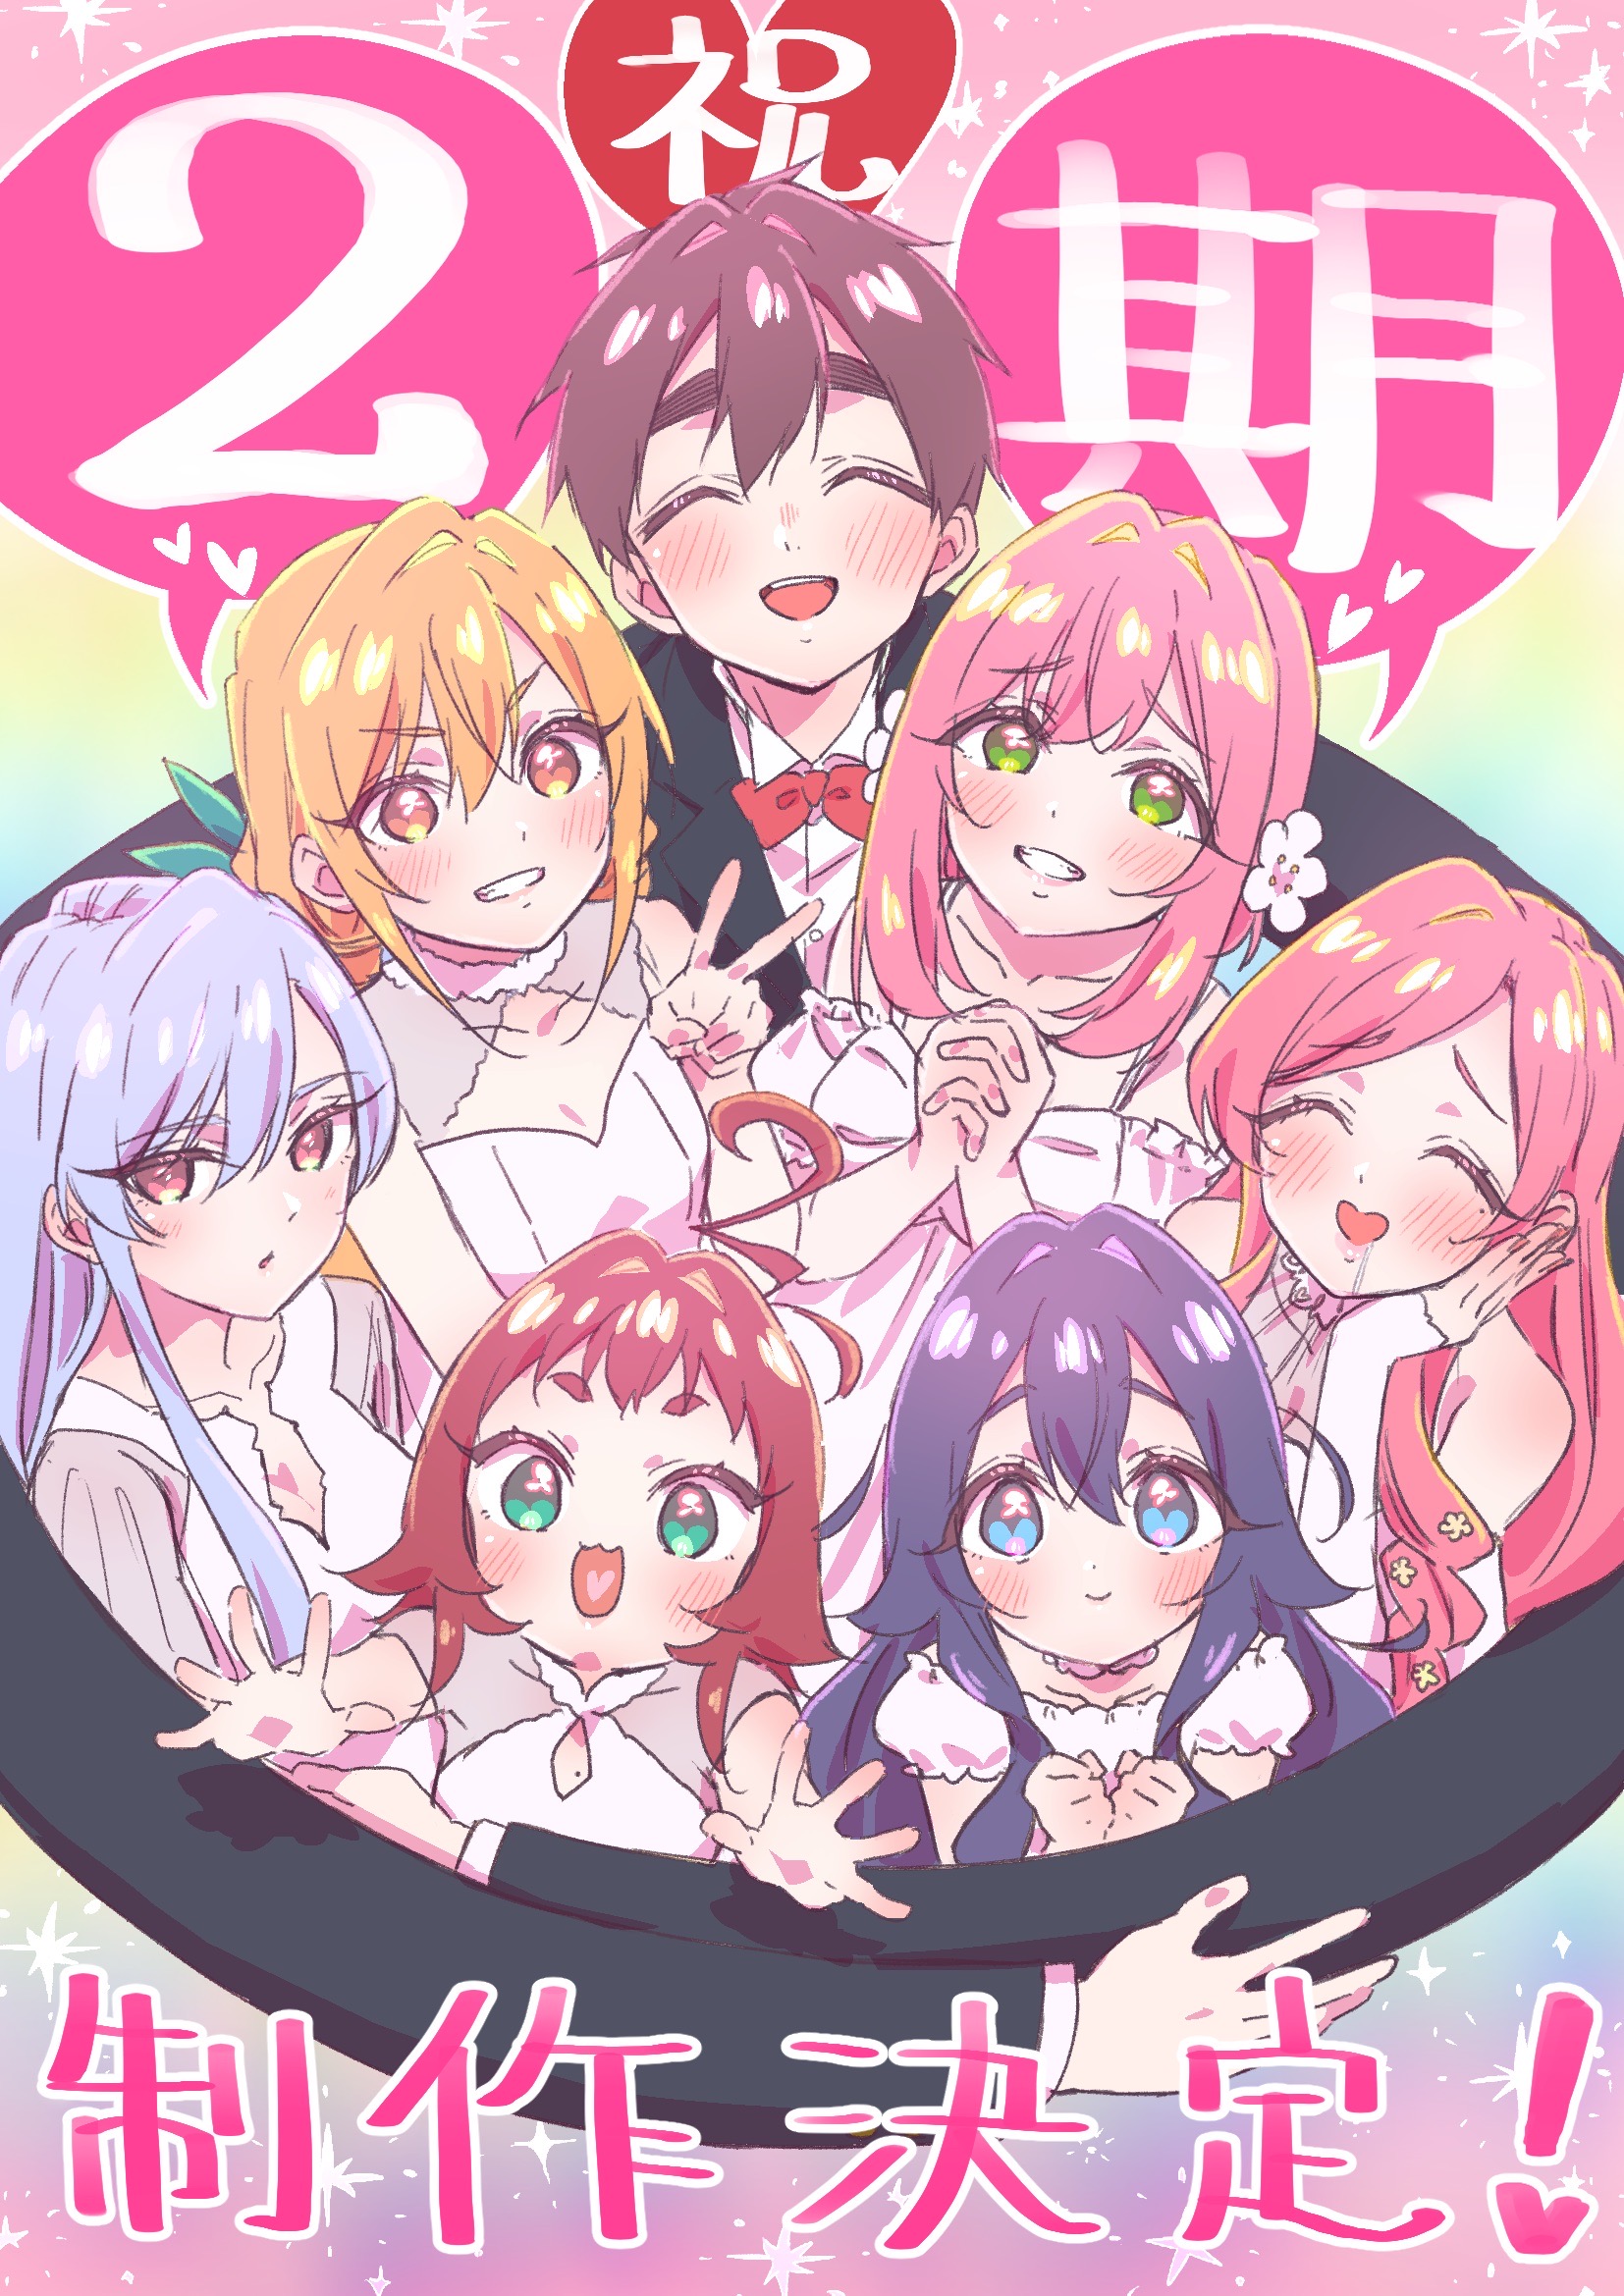 100 người bạn gái thực sự yêu bạn - Hình ảnh thông báo anime mùa 2